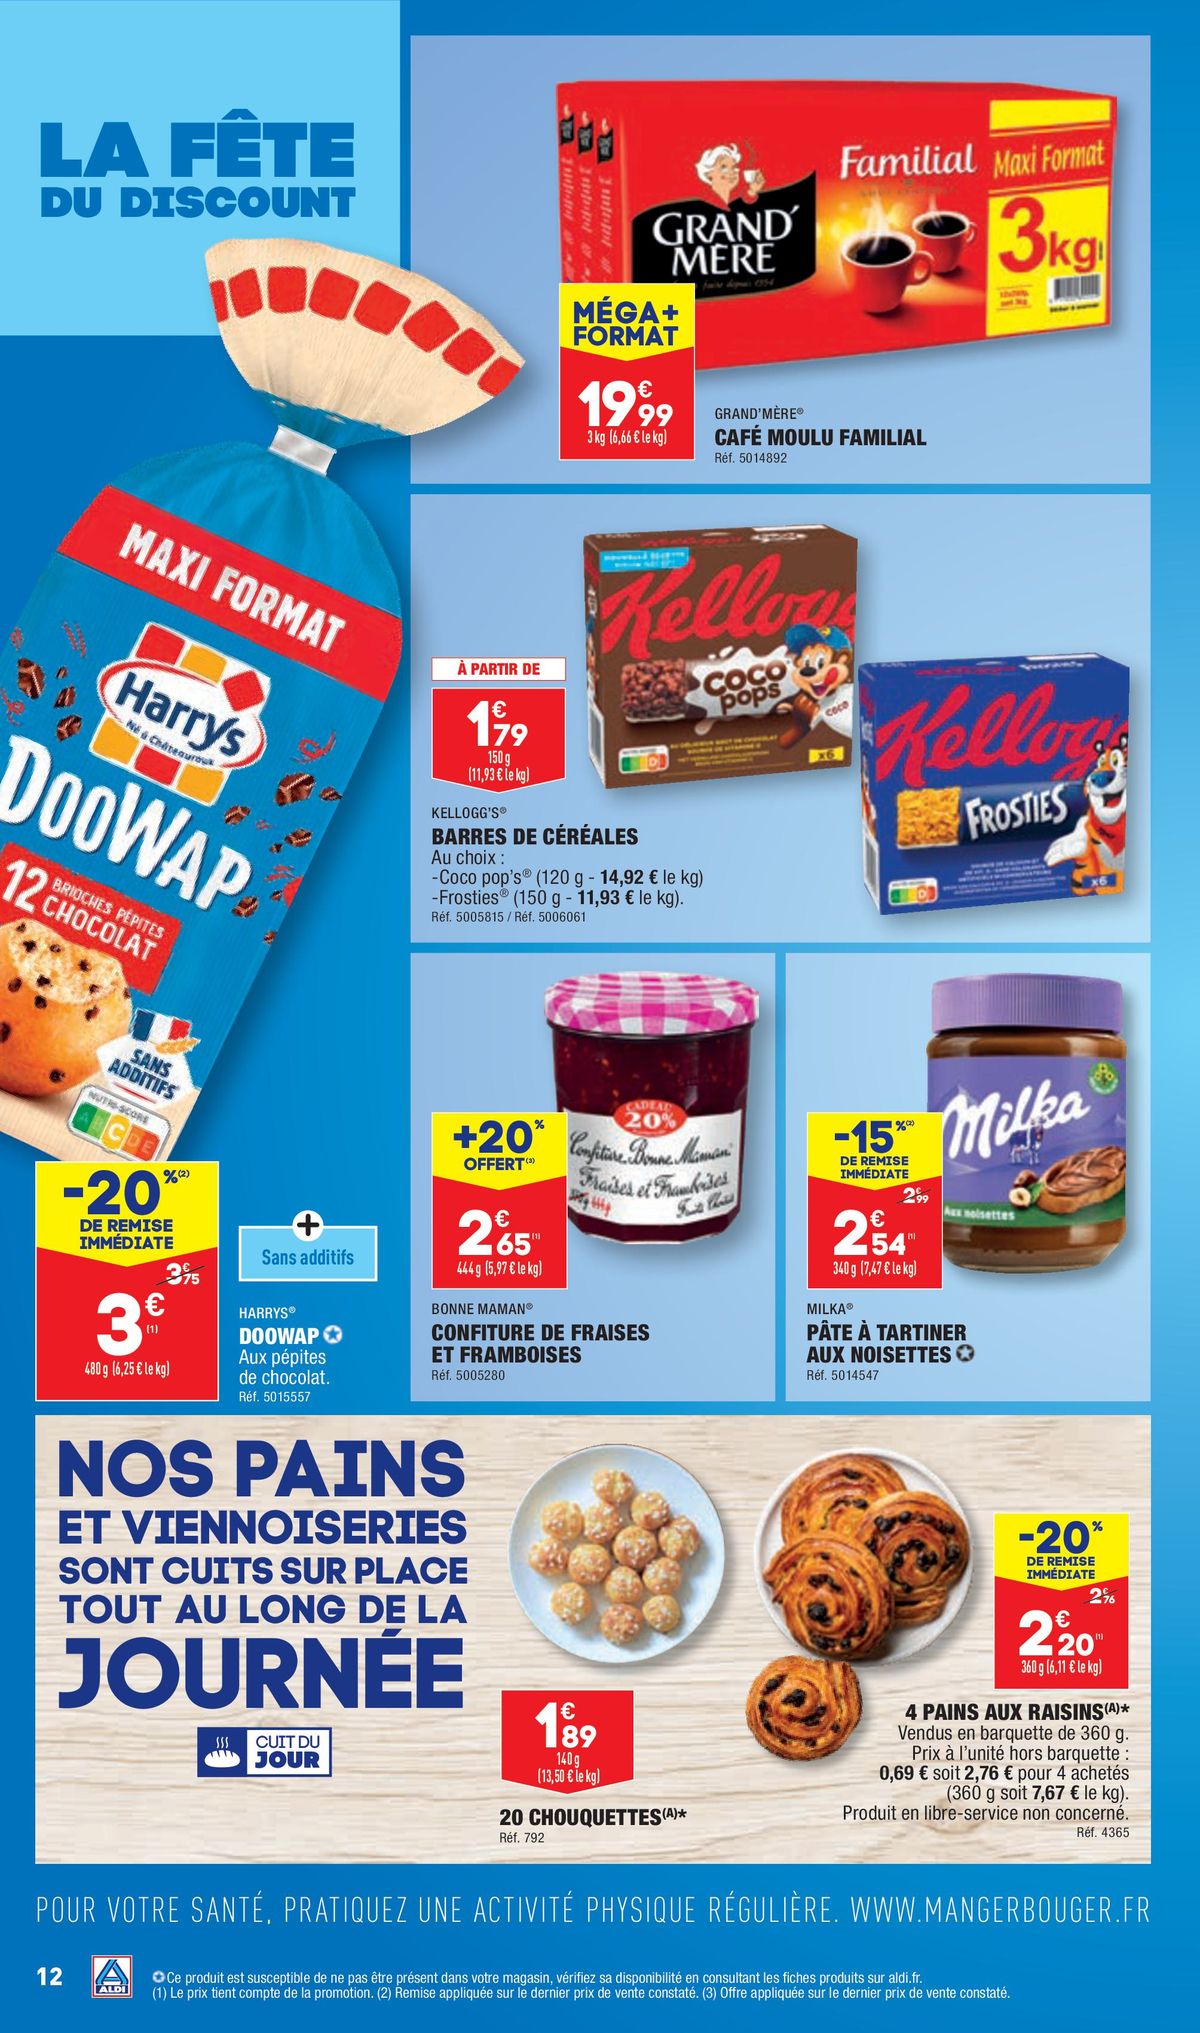 Catalogue Offres du lundi (05/09-11/09), page 00012